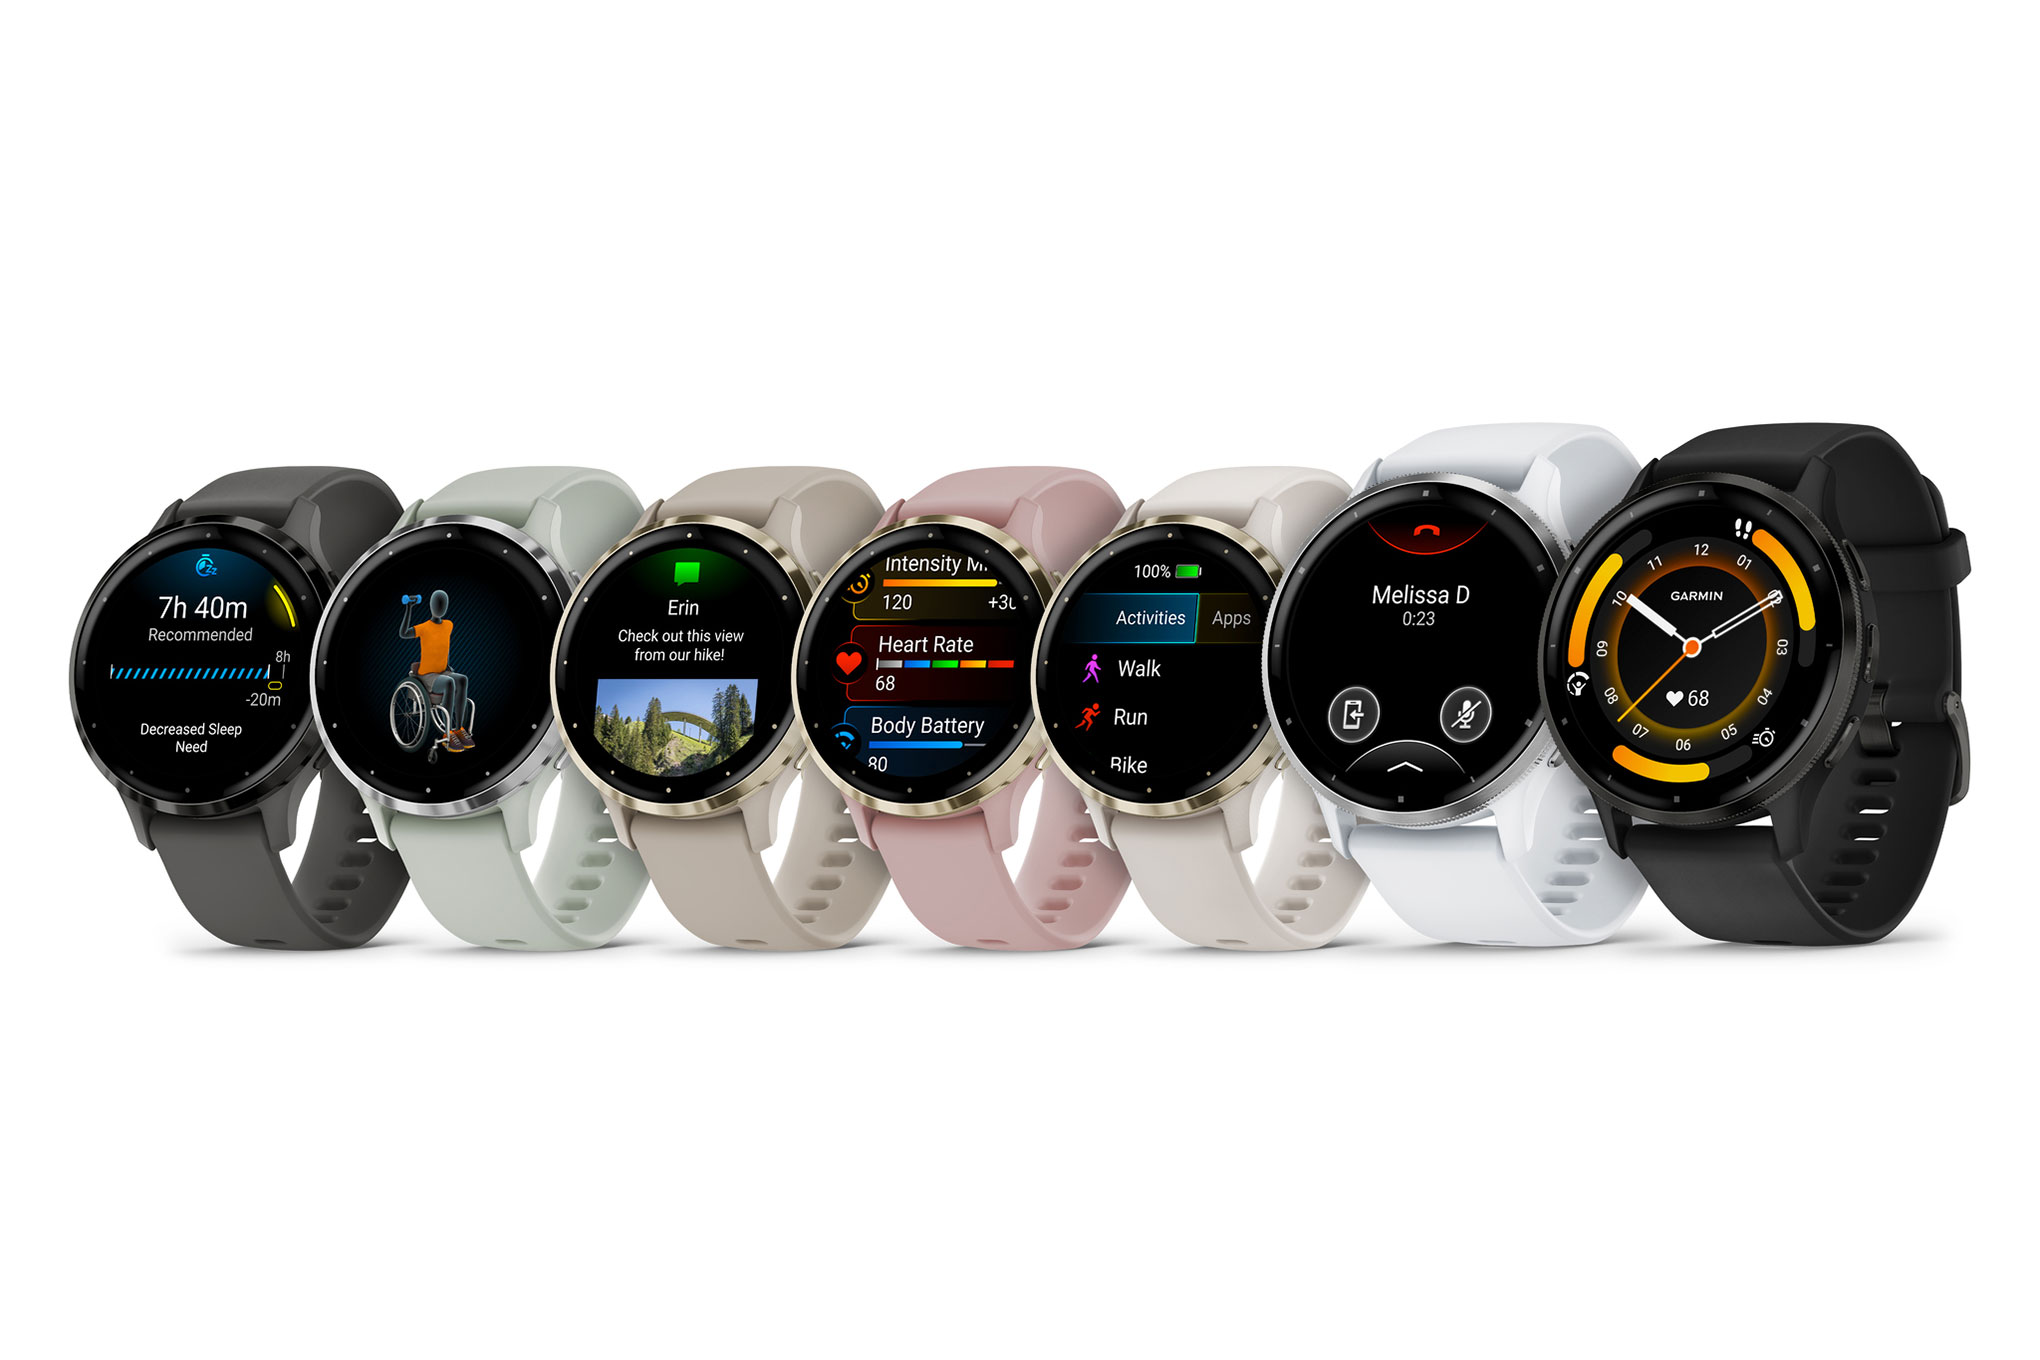 Часы Garmin Venu 3 получили рекомендации для сна, режим инвалидной коляски и цену $450